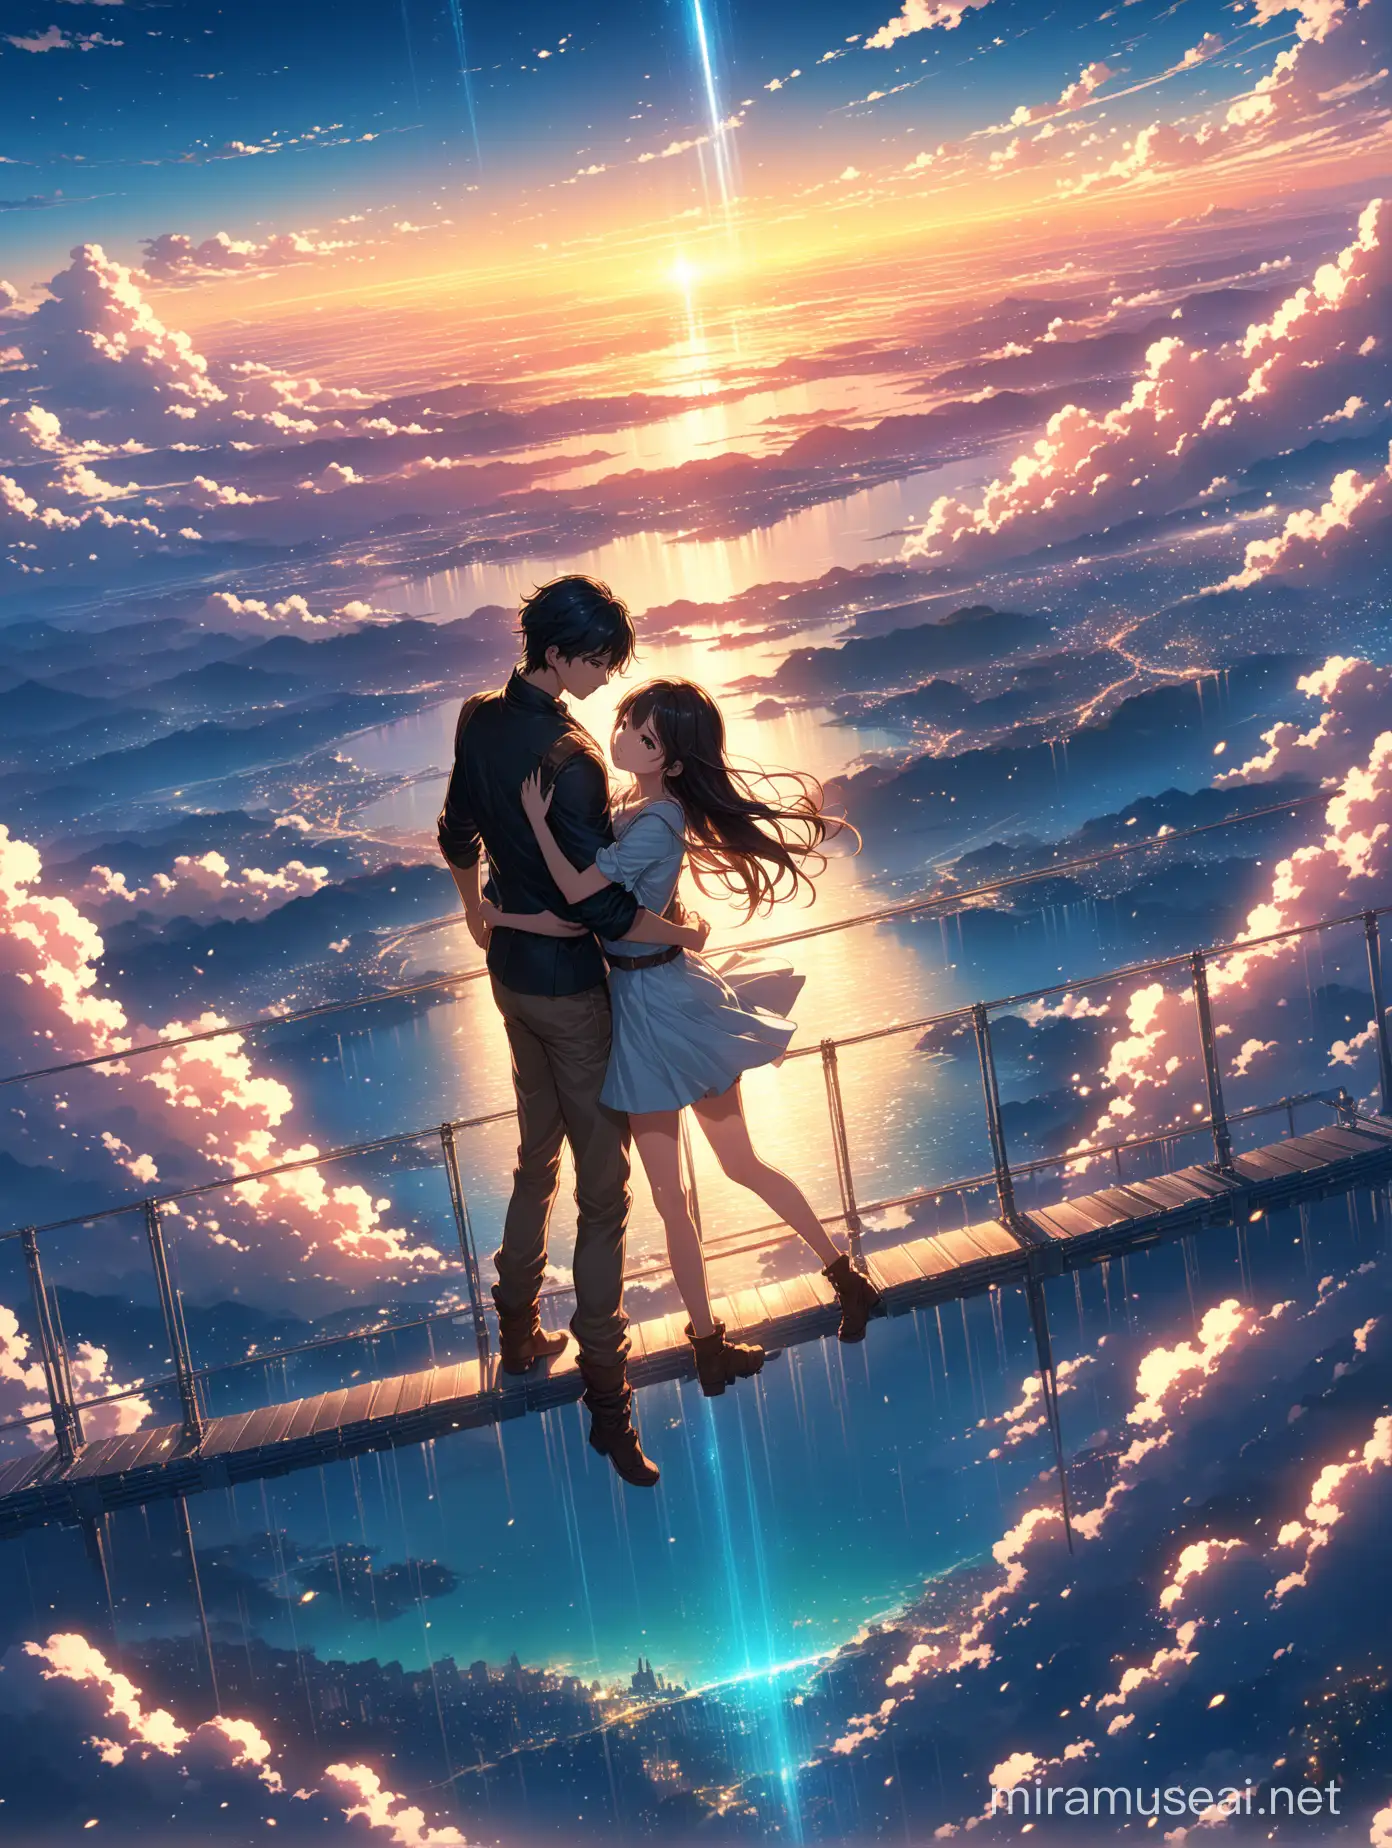 Shoujo Anime Romance Ethereal Sky Dive Embrace